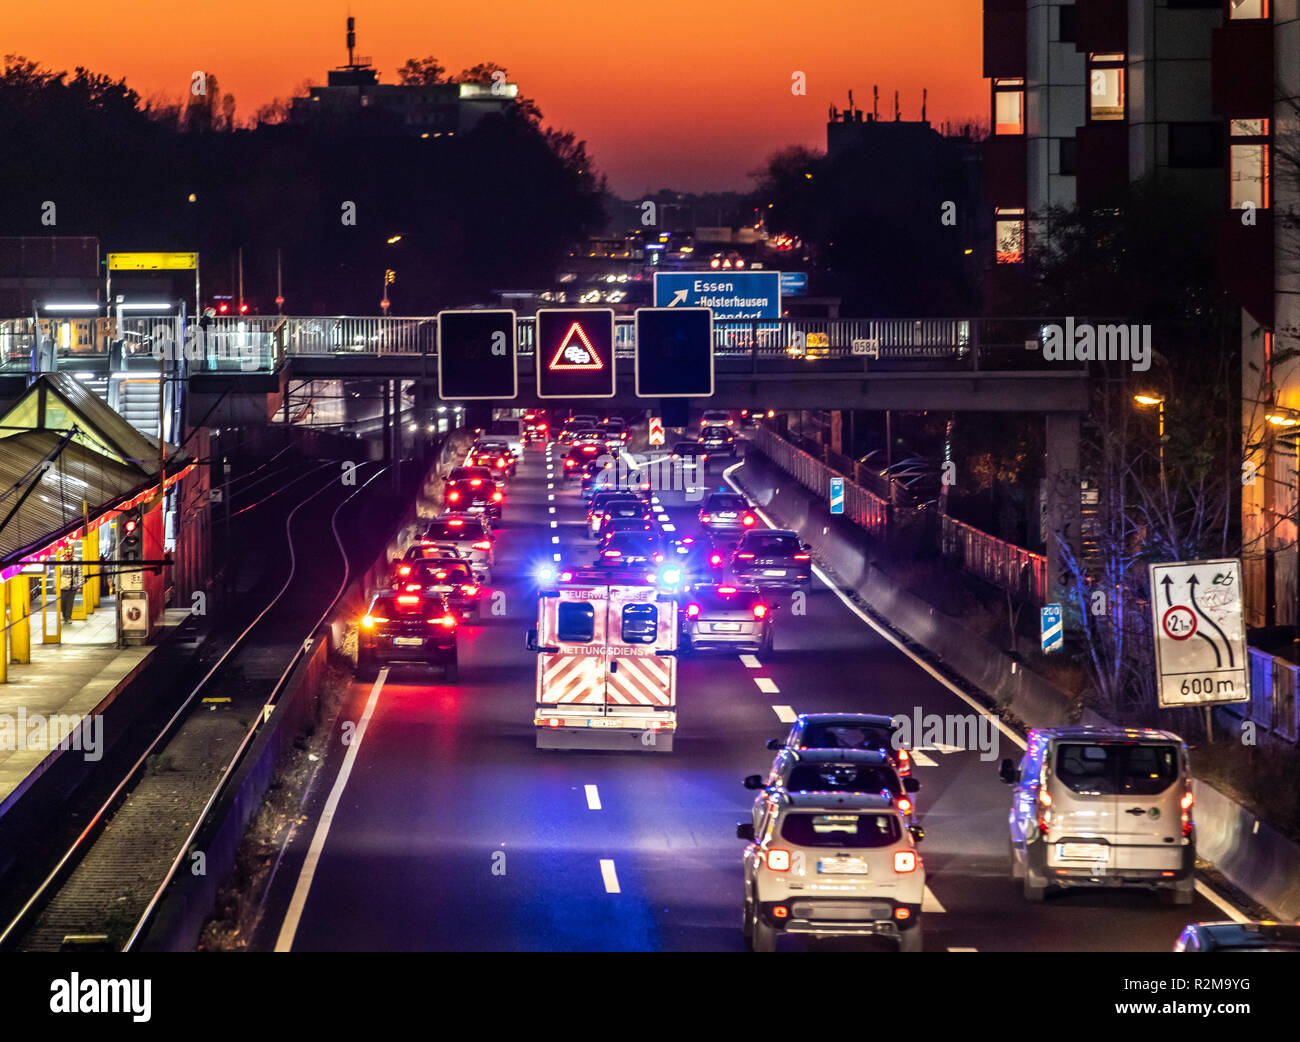 Les lecteurs d'ambulance avec feux bleus et des sirènes, sur une autoroute, A40 à Essen, à une mission d'urgence, de sauvetage lane, Allemagne Banque D'Images